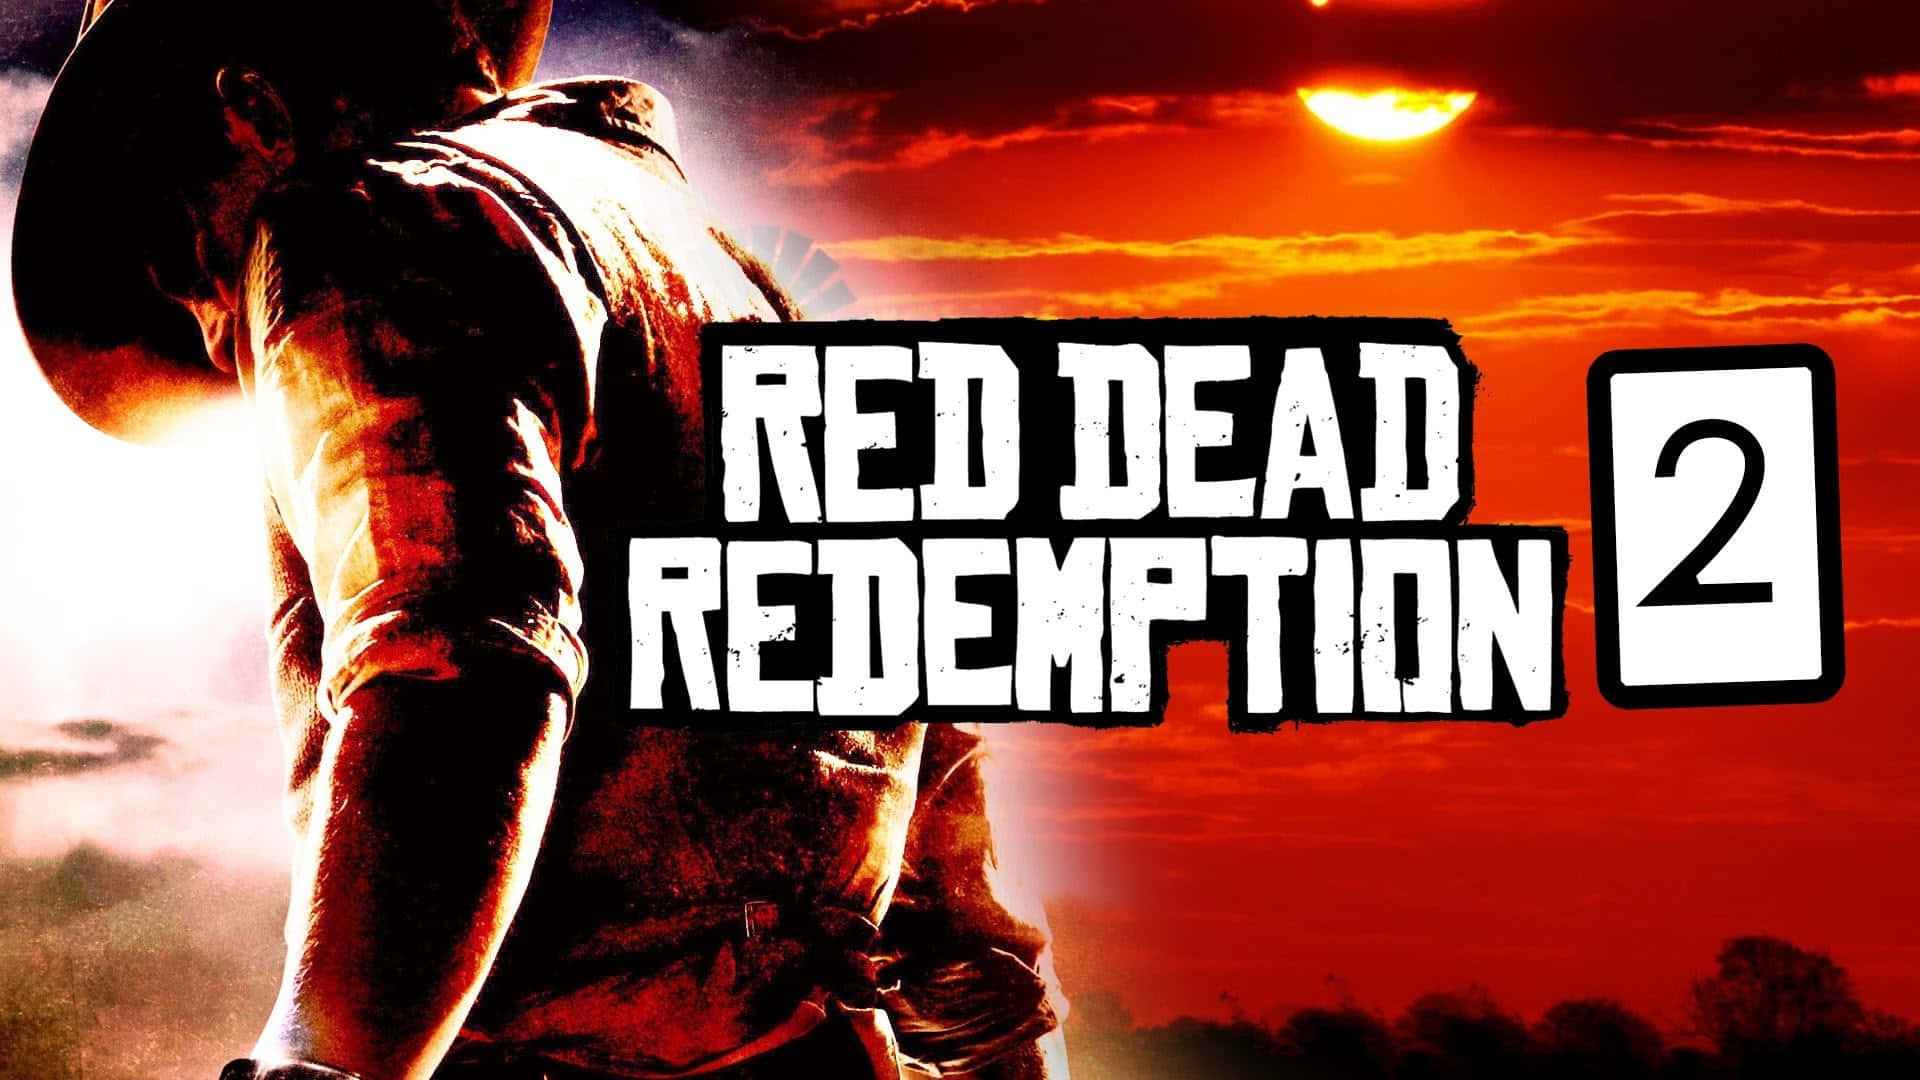 Landskapsaffischdesign1920x1080 Red Dead Redemption 2 Bakgrundsbild.